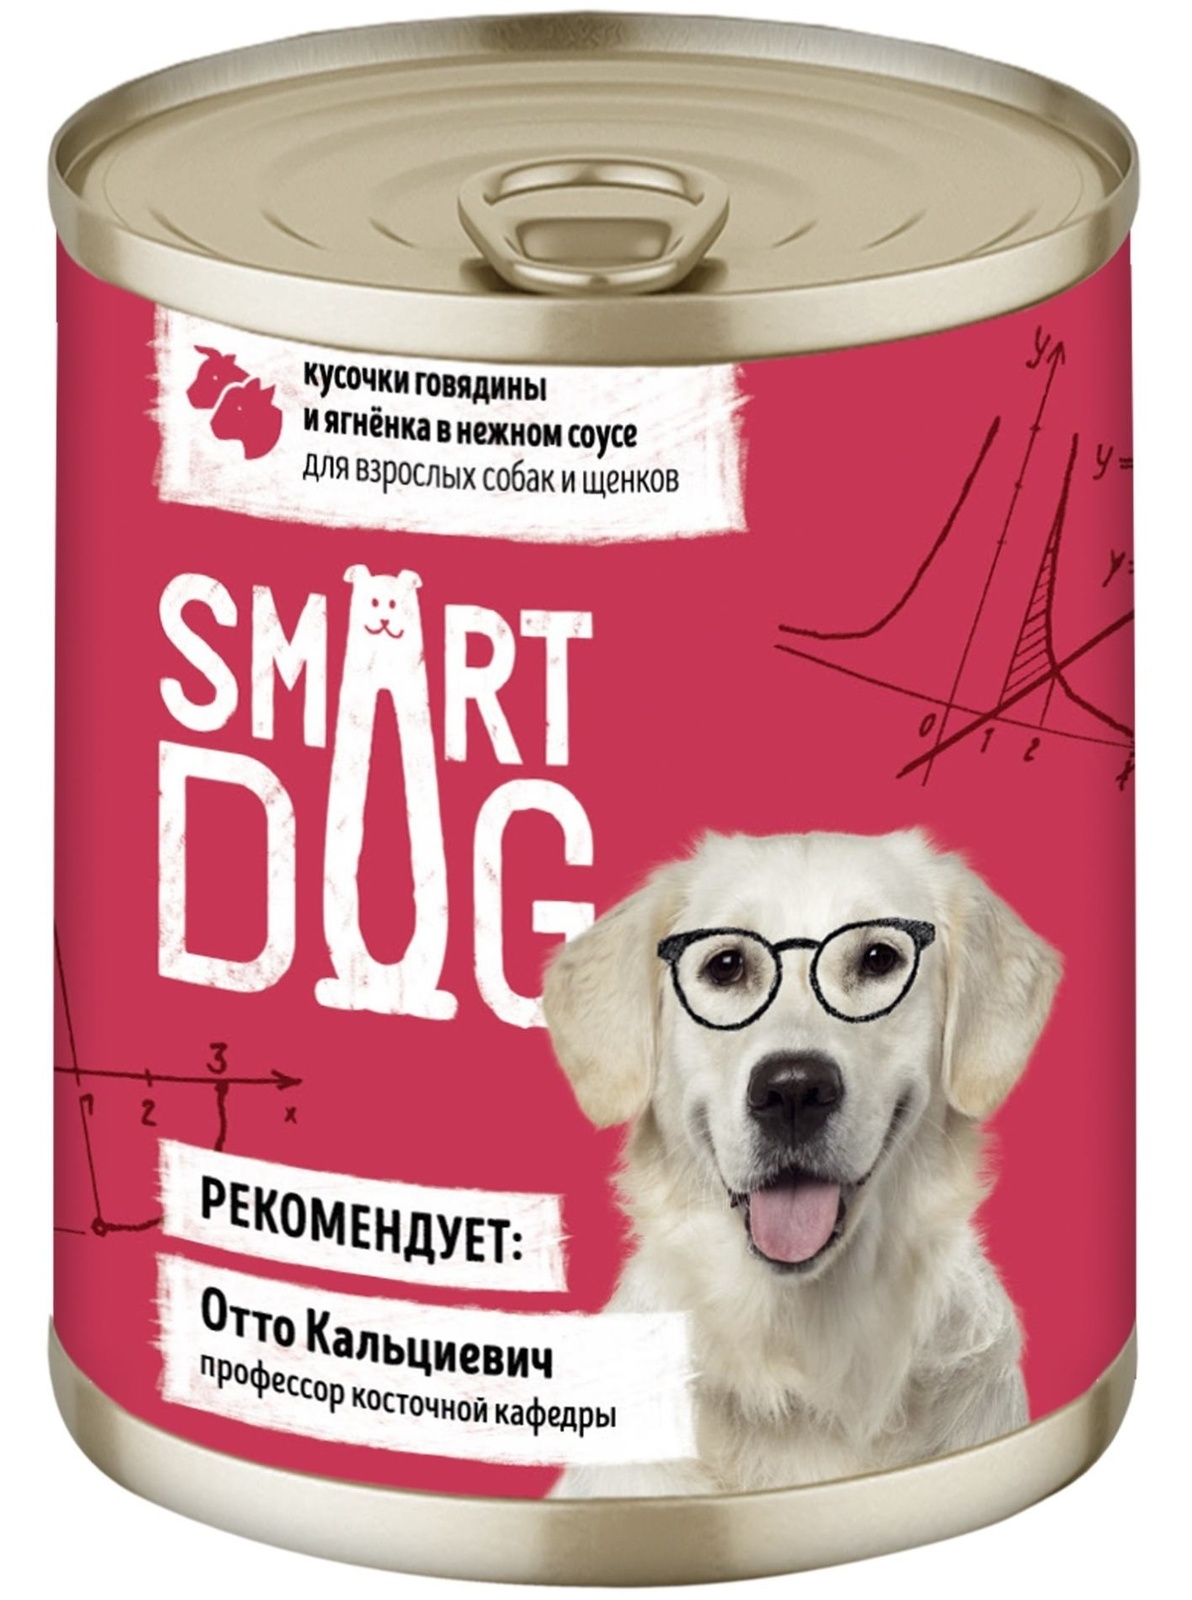 Smart Dog консервы Smart Dog консервы консервы для взрослых собак и щенков: кусочки говядины и ягненка в нежном соусе (850 г)